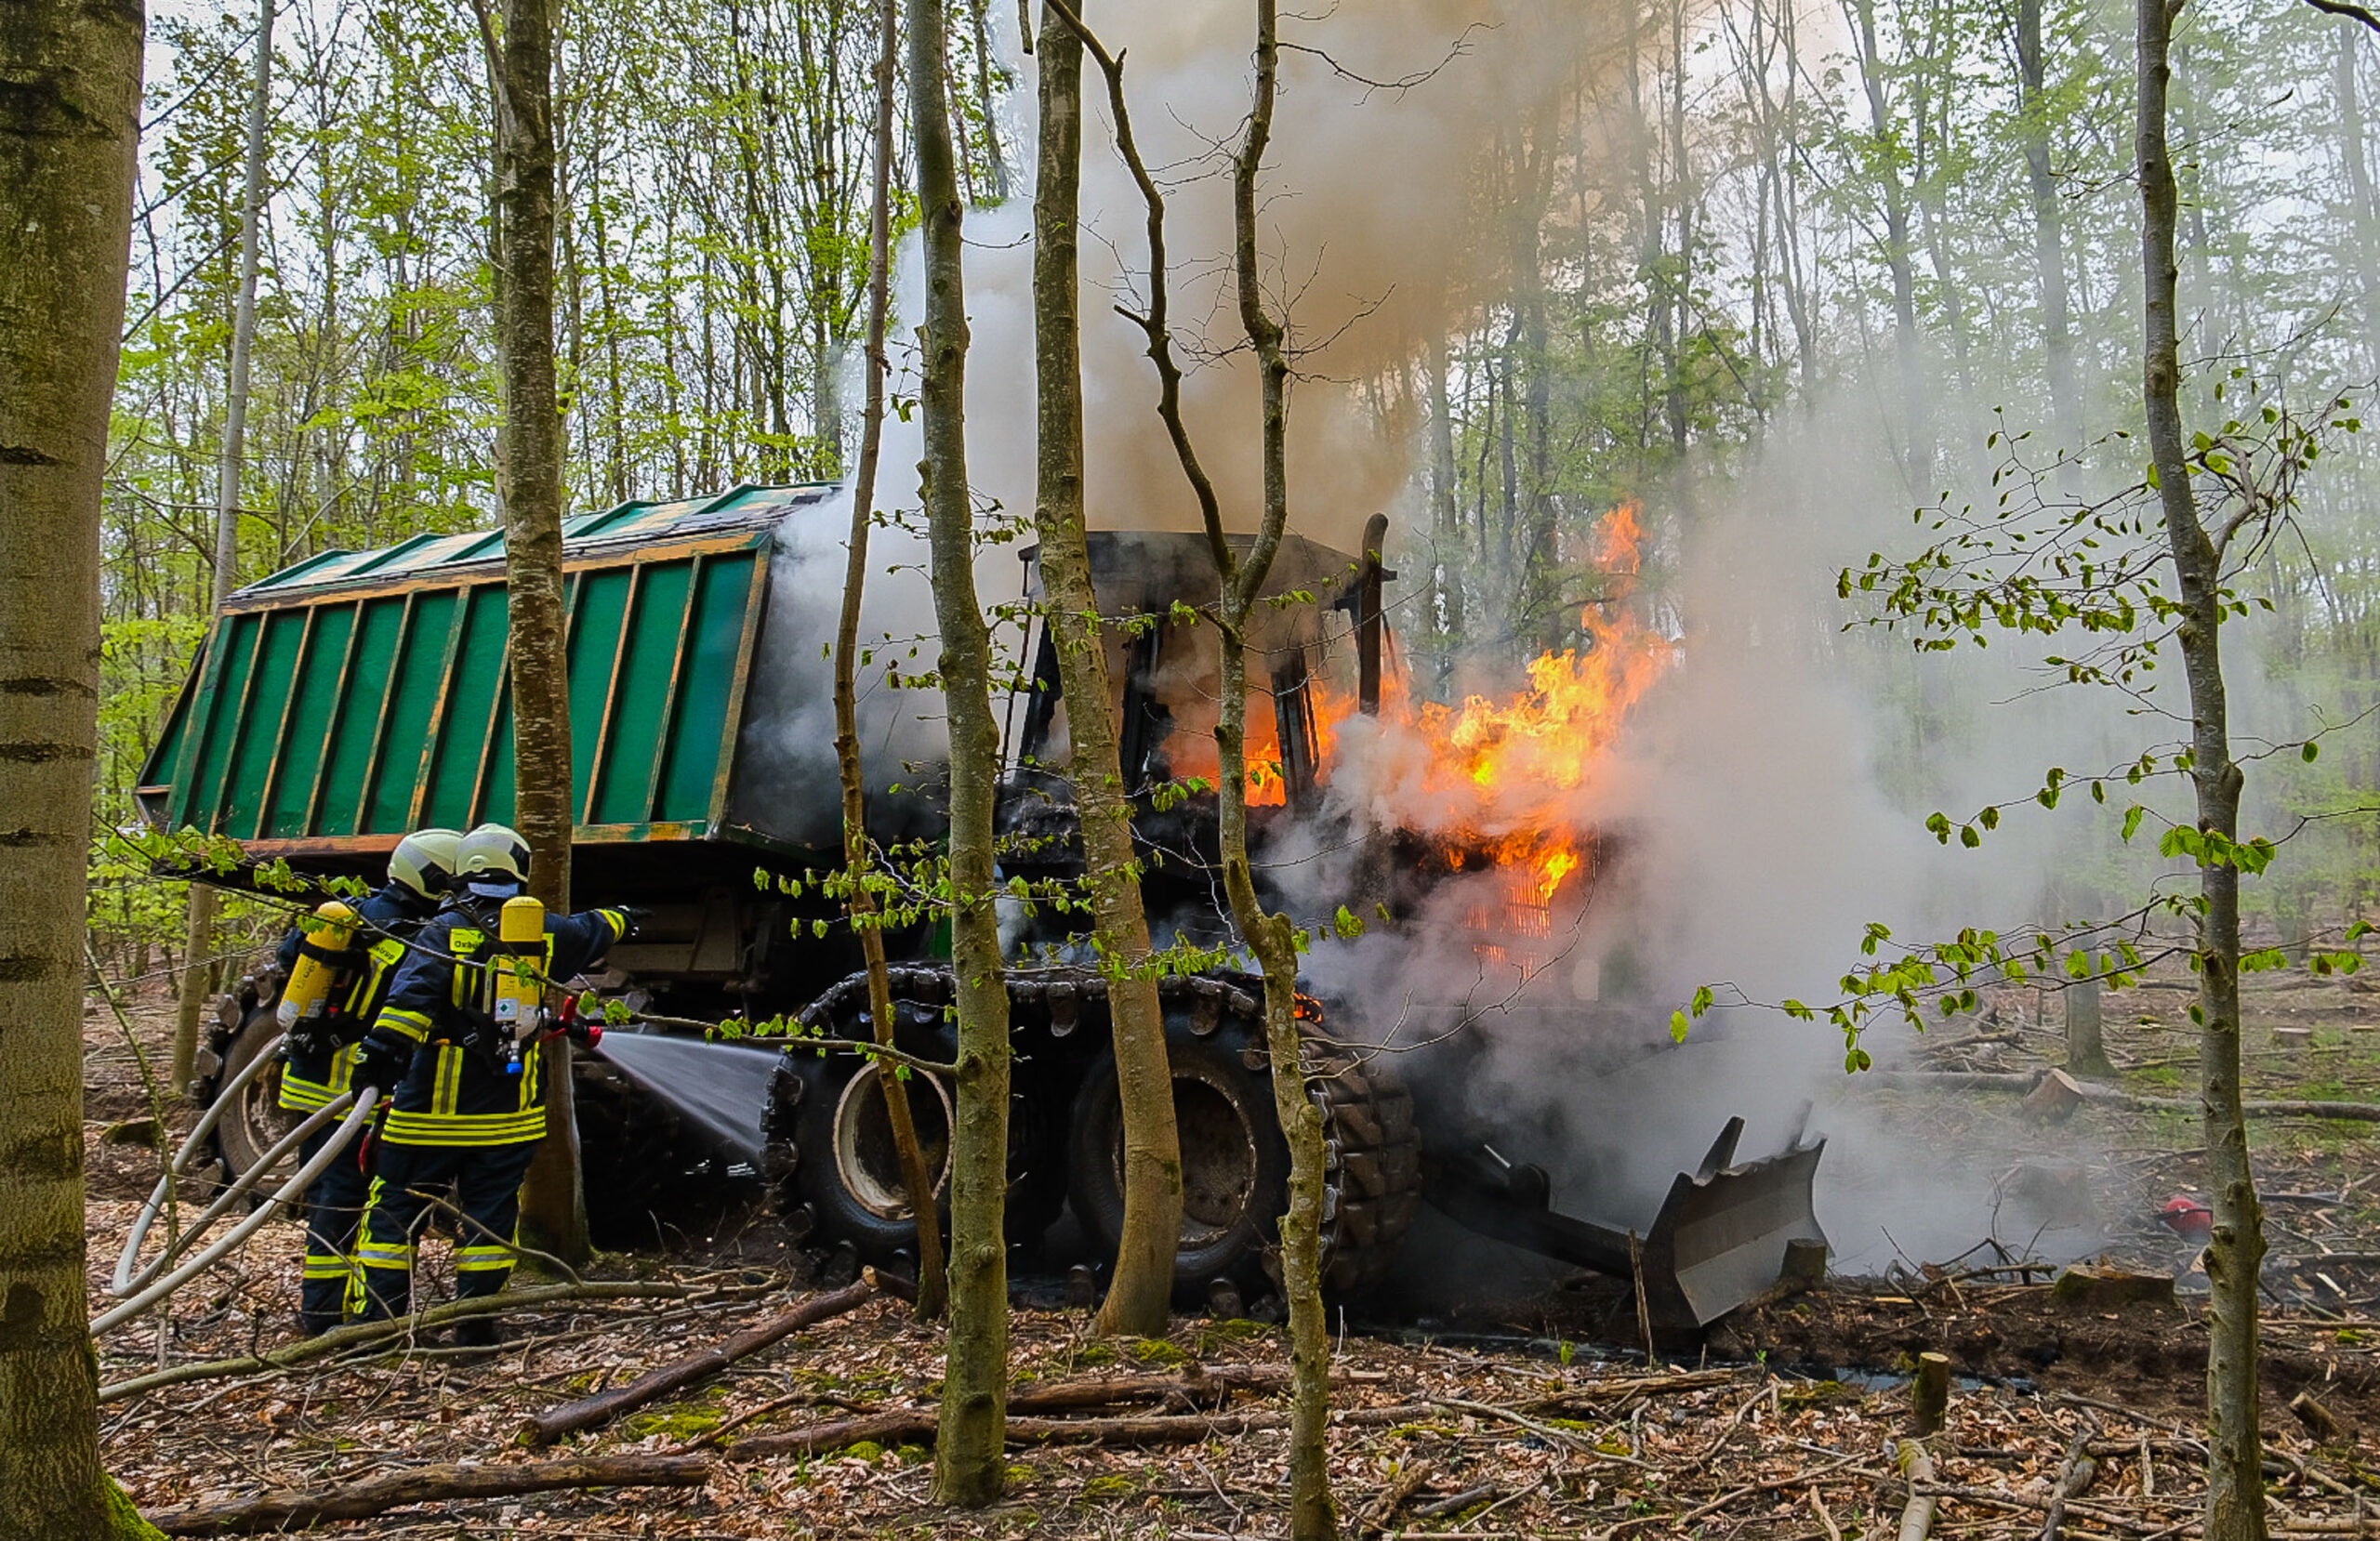 Transportfahrzeug brennt im Wald – schwierge Löscharbeiten